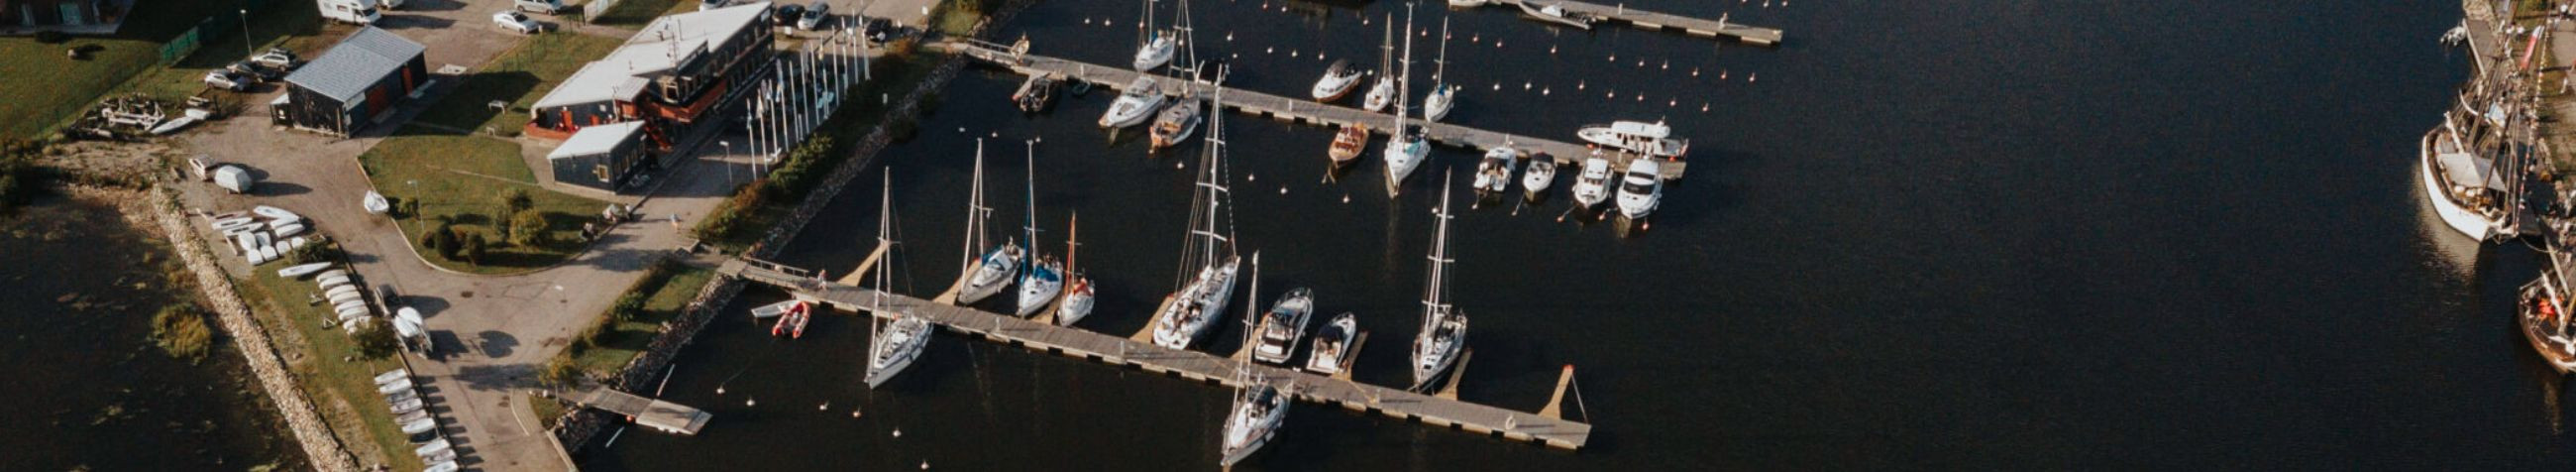 Kuressaare Jahisadam on mitmekülgne merendusettevõte, mis pakub kaikohtade renti, vahvaid paadisõite ning mitmekülgseid sadamateenuseid, edendades samal ajal merendusalast haridust ja keskkonnasõbralikku merendust linnaelanike ja külastajate seas.